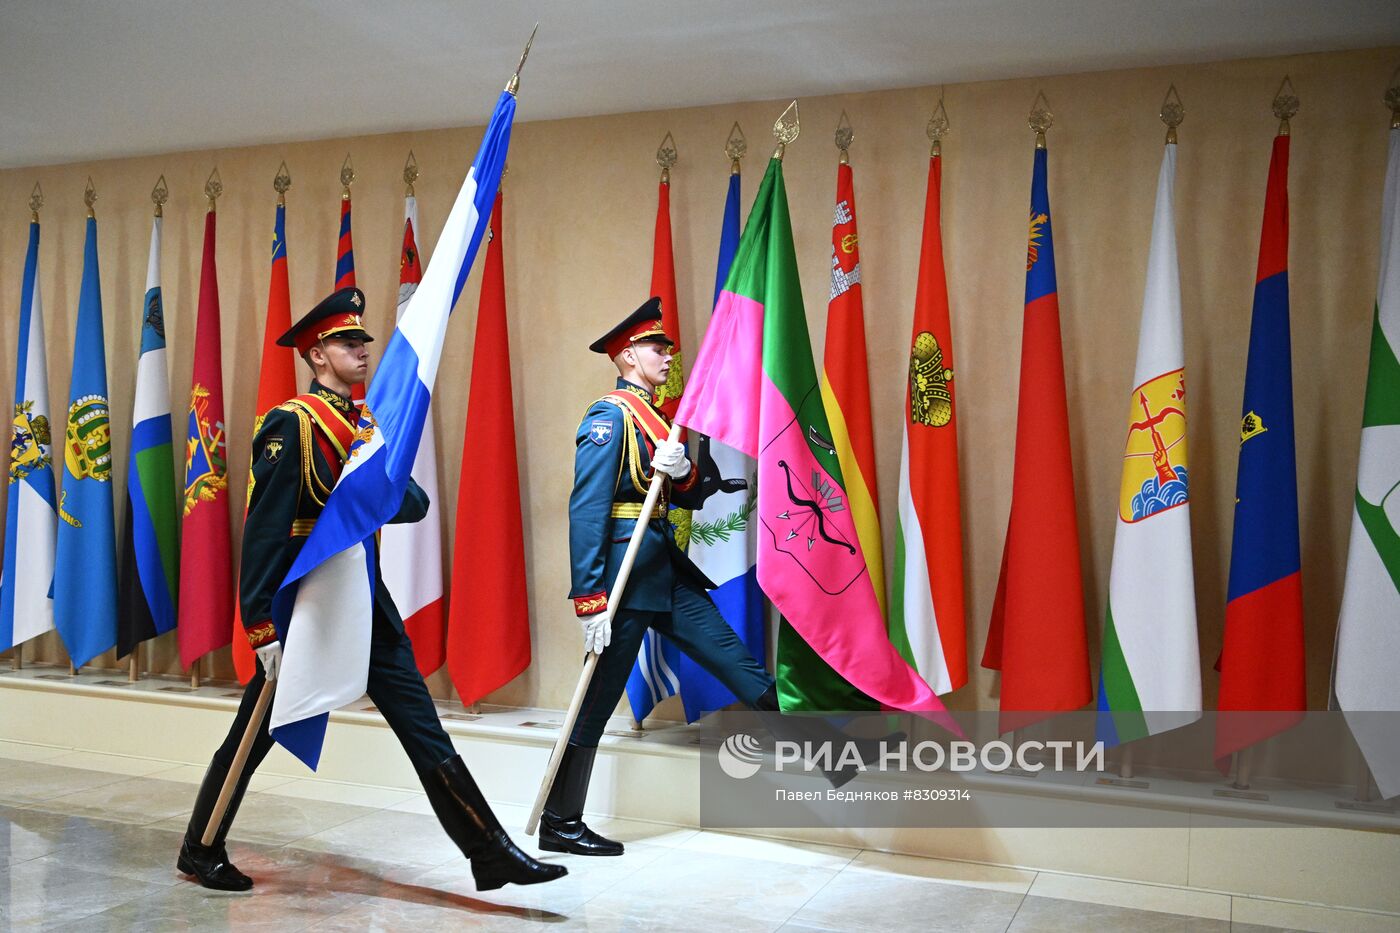 Установка флагов новых субъектов Российской Федерации в Совете Федерации